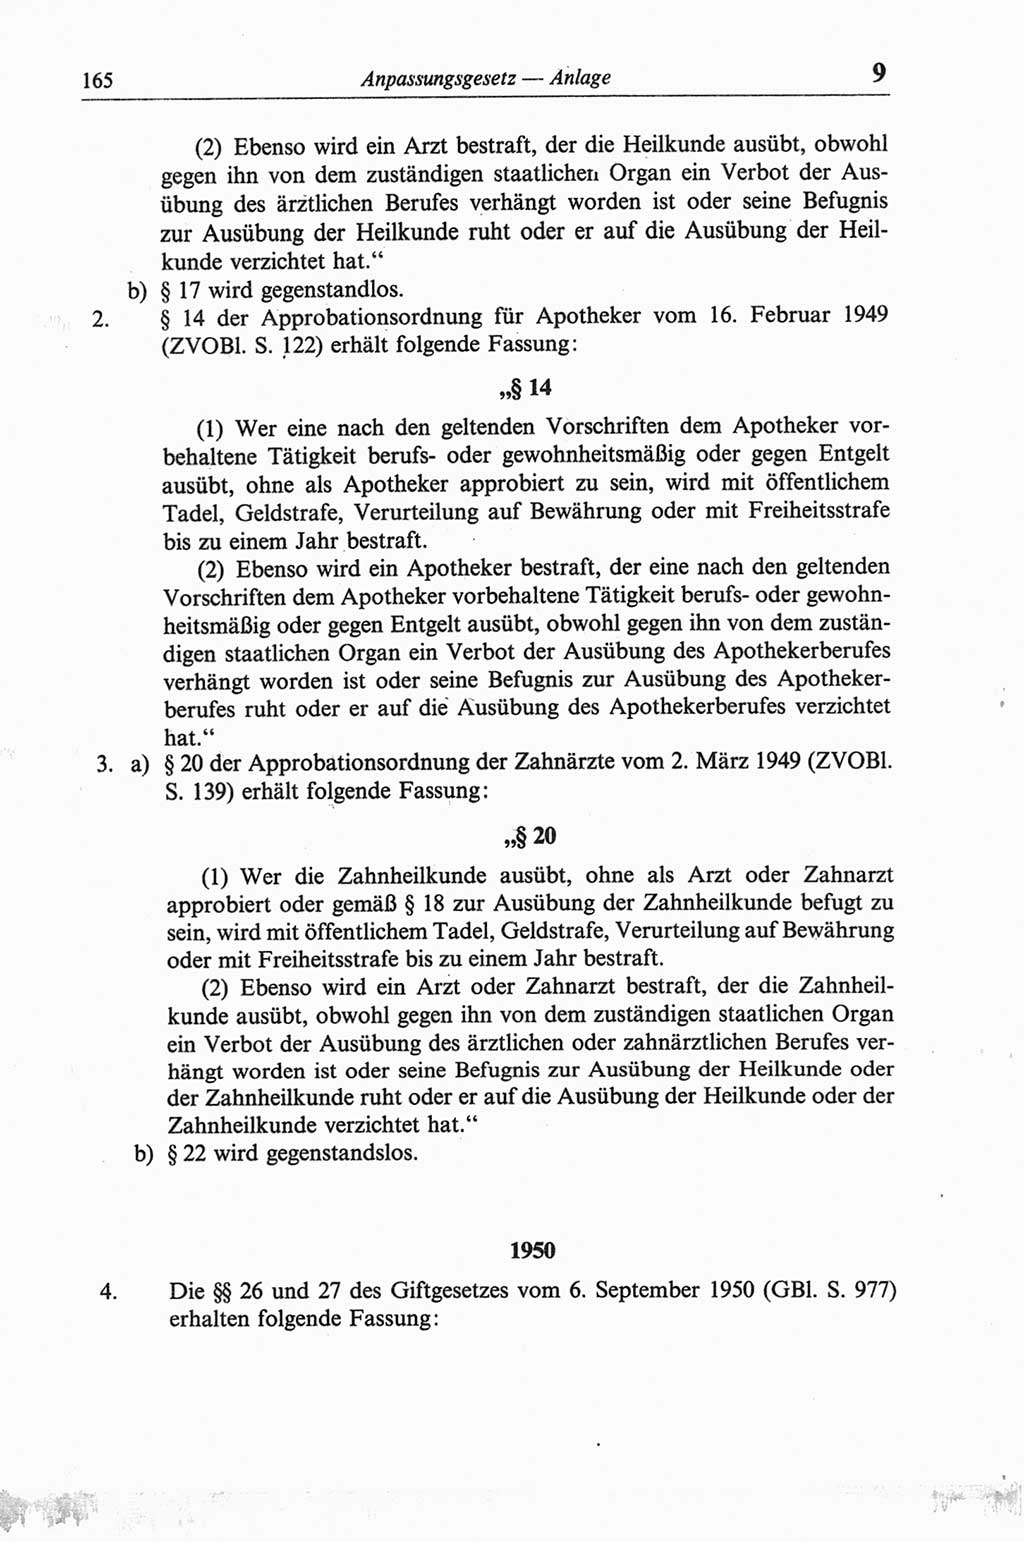 Strafgesetzbuch (StGB) der Deutschen Demokratischen Republik (DDR) und angrenzende Gesetze und Bestimmungen 1968, Seite 165 (StGB Ges. Best. DDR 1968, S. 165)